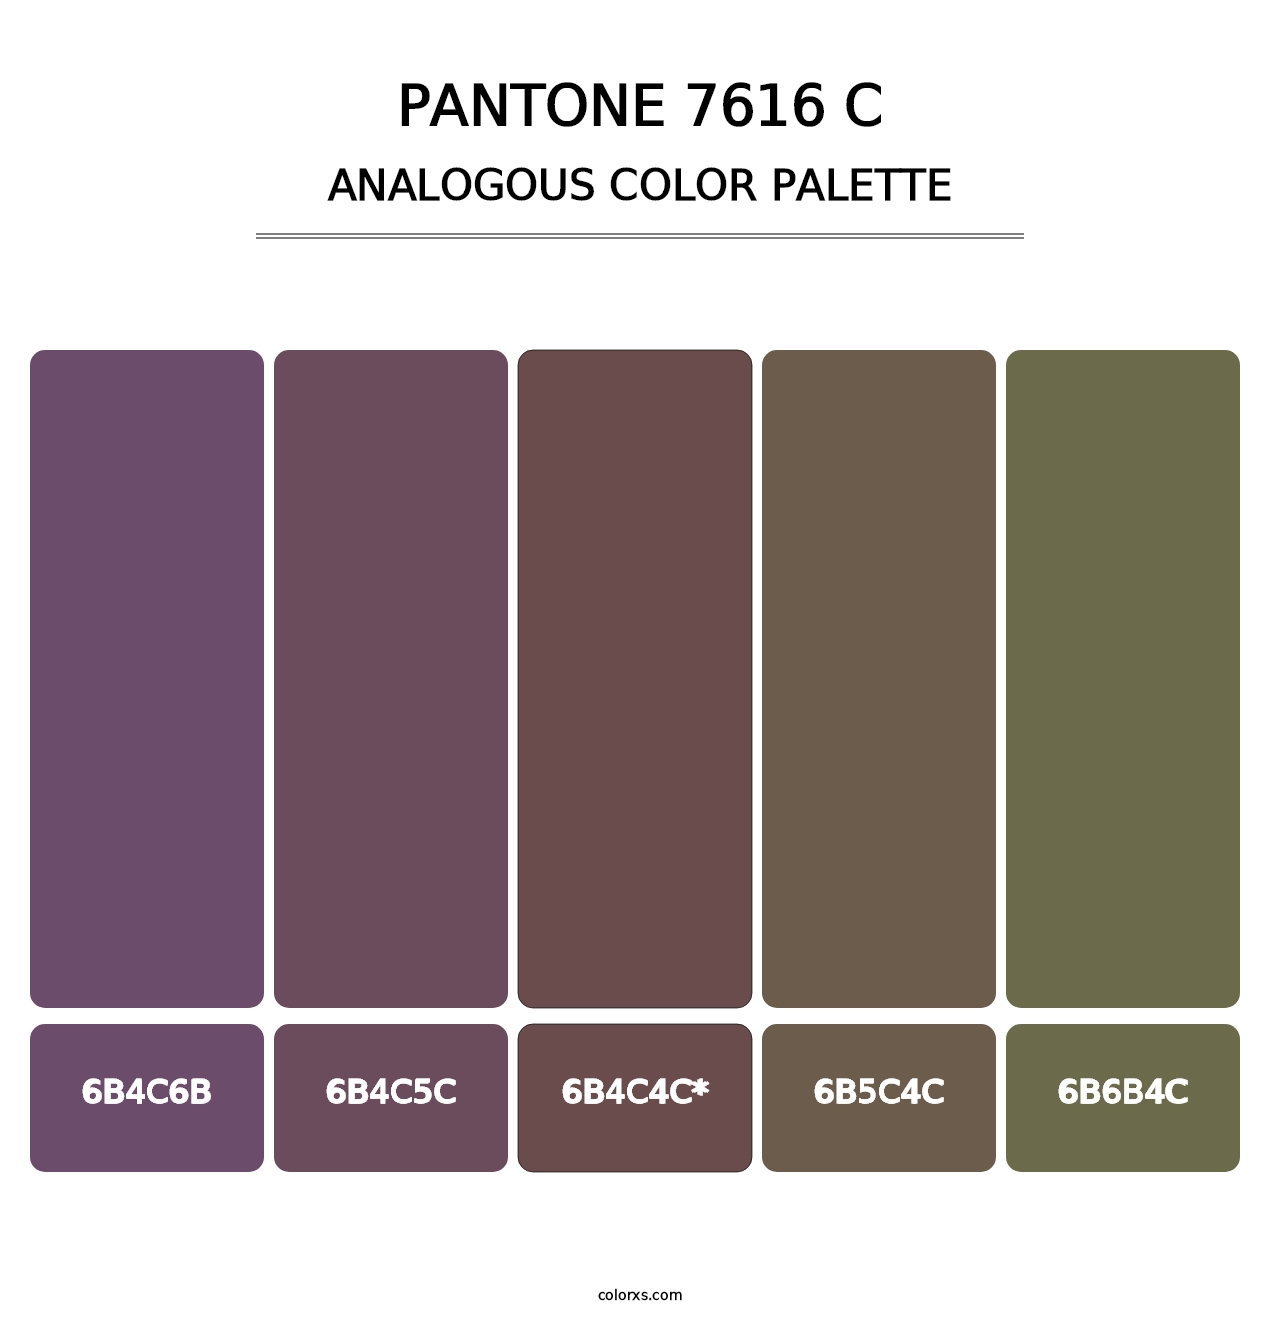 PANTONE 7616 C - Analogous Color Palette